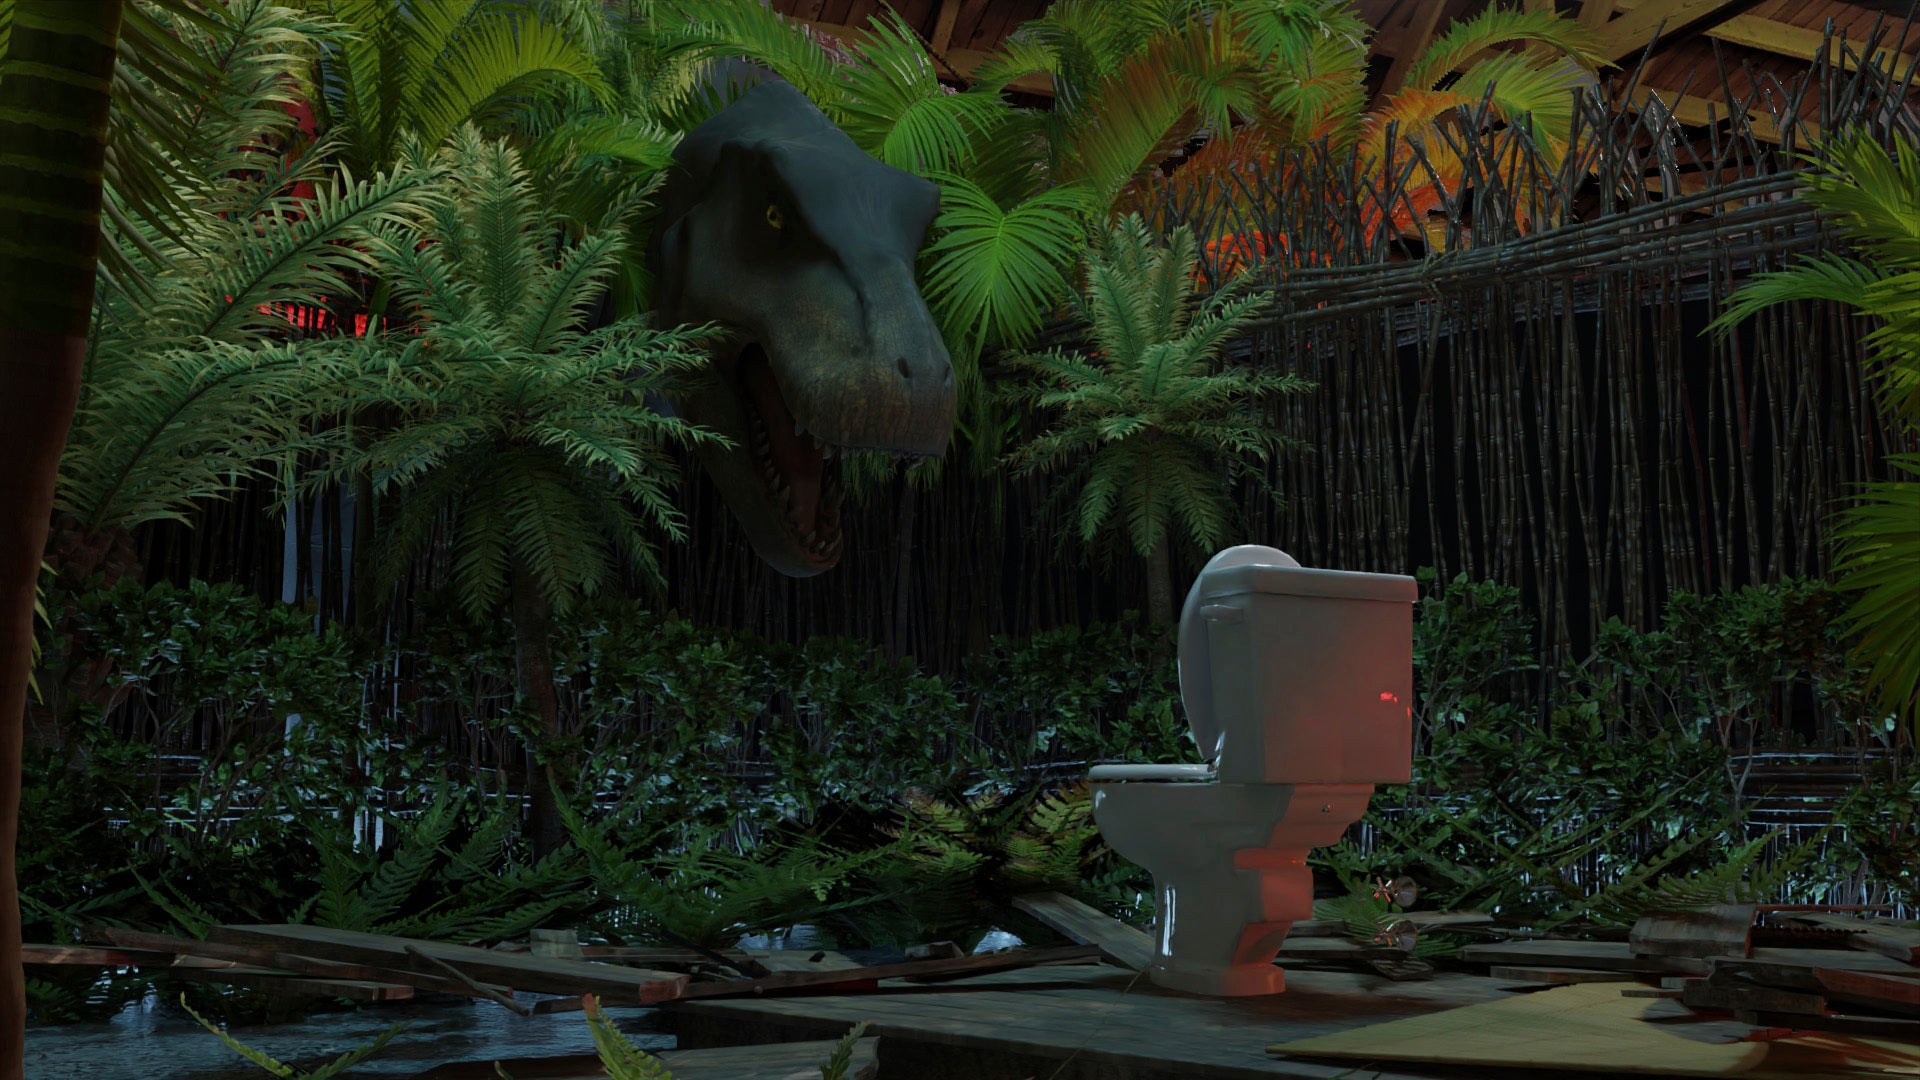 يخرج الديناصور ريكس من الغابة إلى مرحاض وحيد.